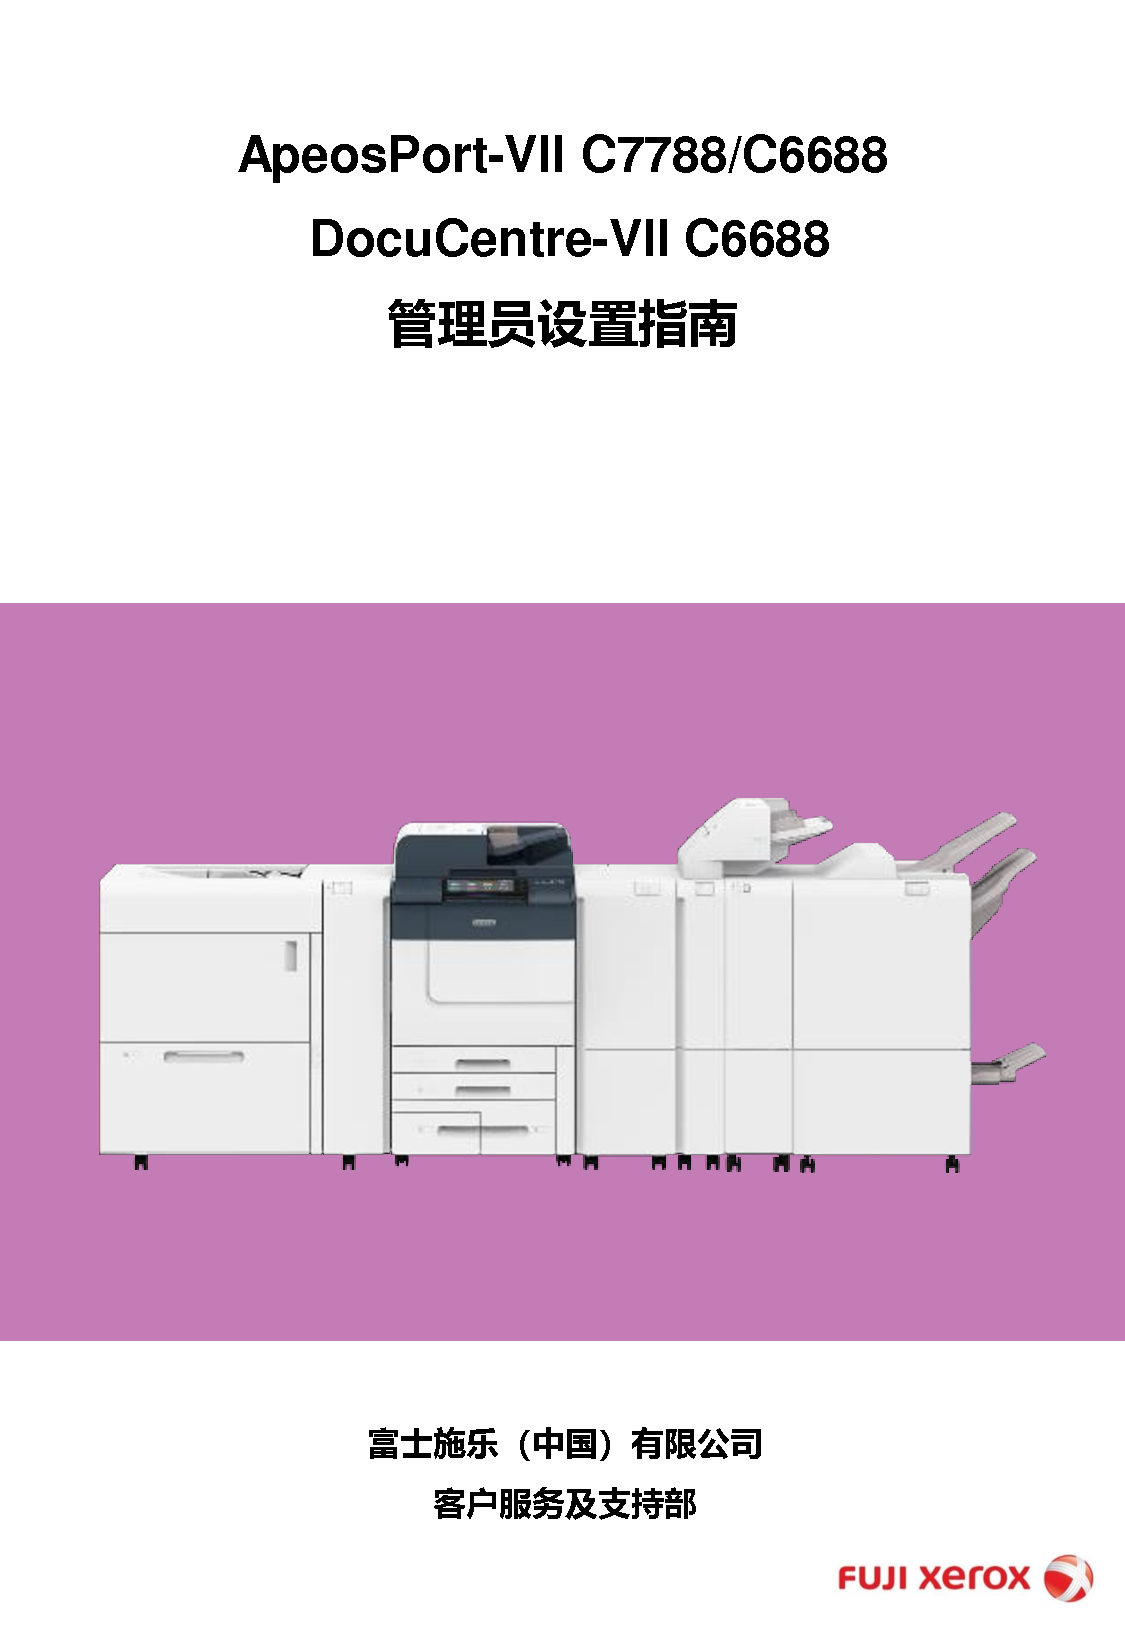 富士施乐 Fuji Xerox ApeosPort-VII C6688, DocuCentre-VII C6688 管理员设置指南 封面